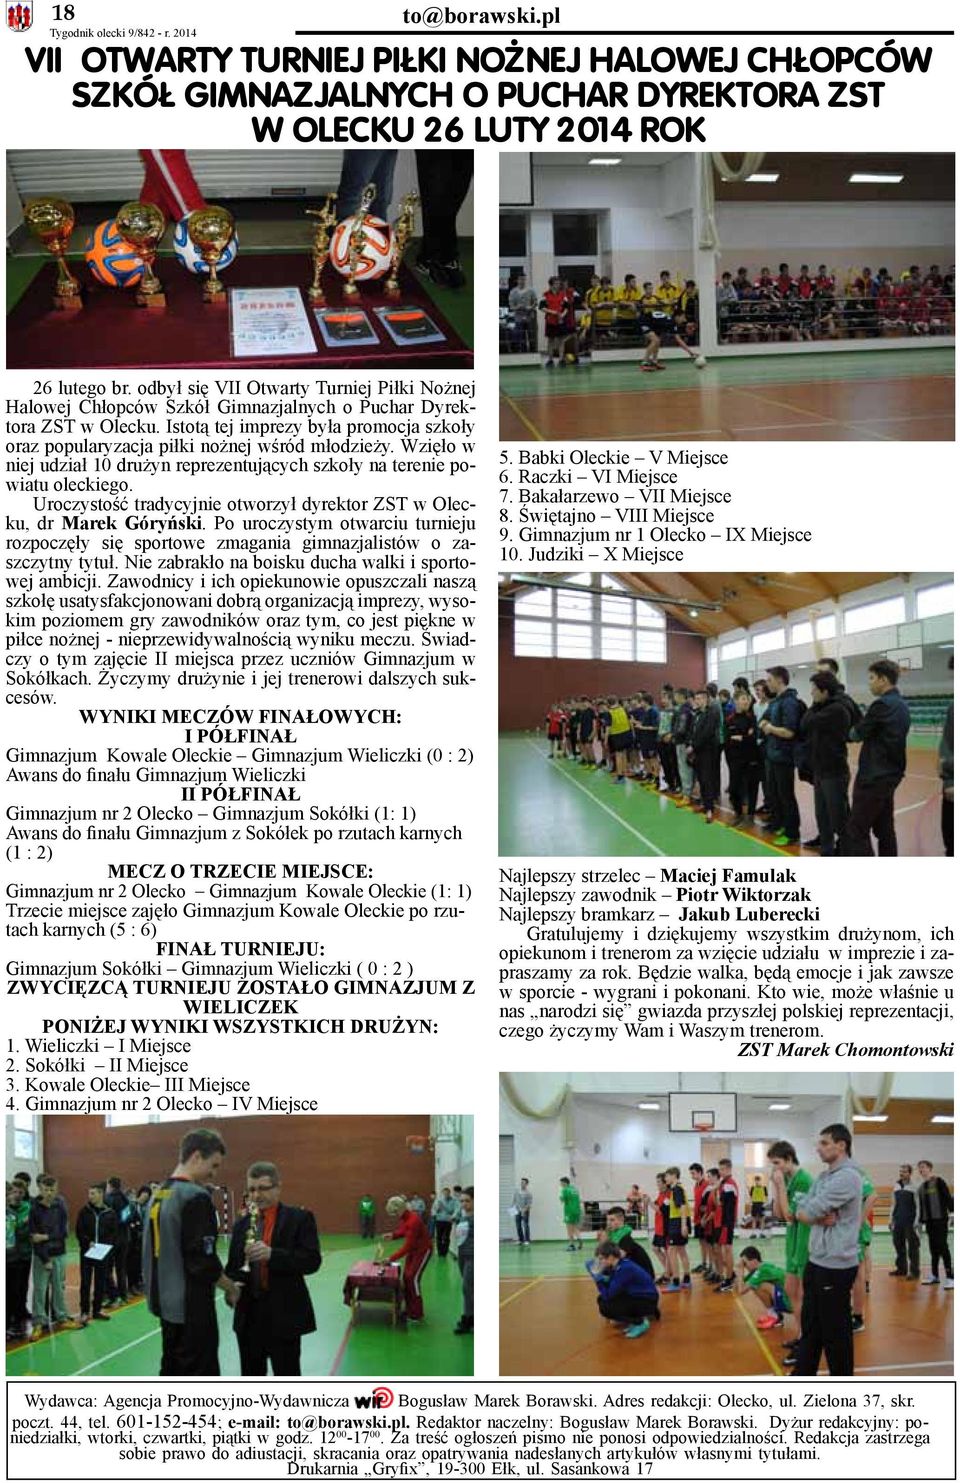 Istotą tej imprezy była promocja szkoły oraz popularyzacja piłki nożnej wśród młodzieży. Wzięło w niej udział 10 drużyn reprezentujących szkoły na terenie powiatu oleckiego.